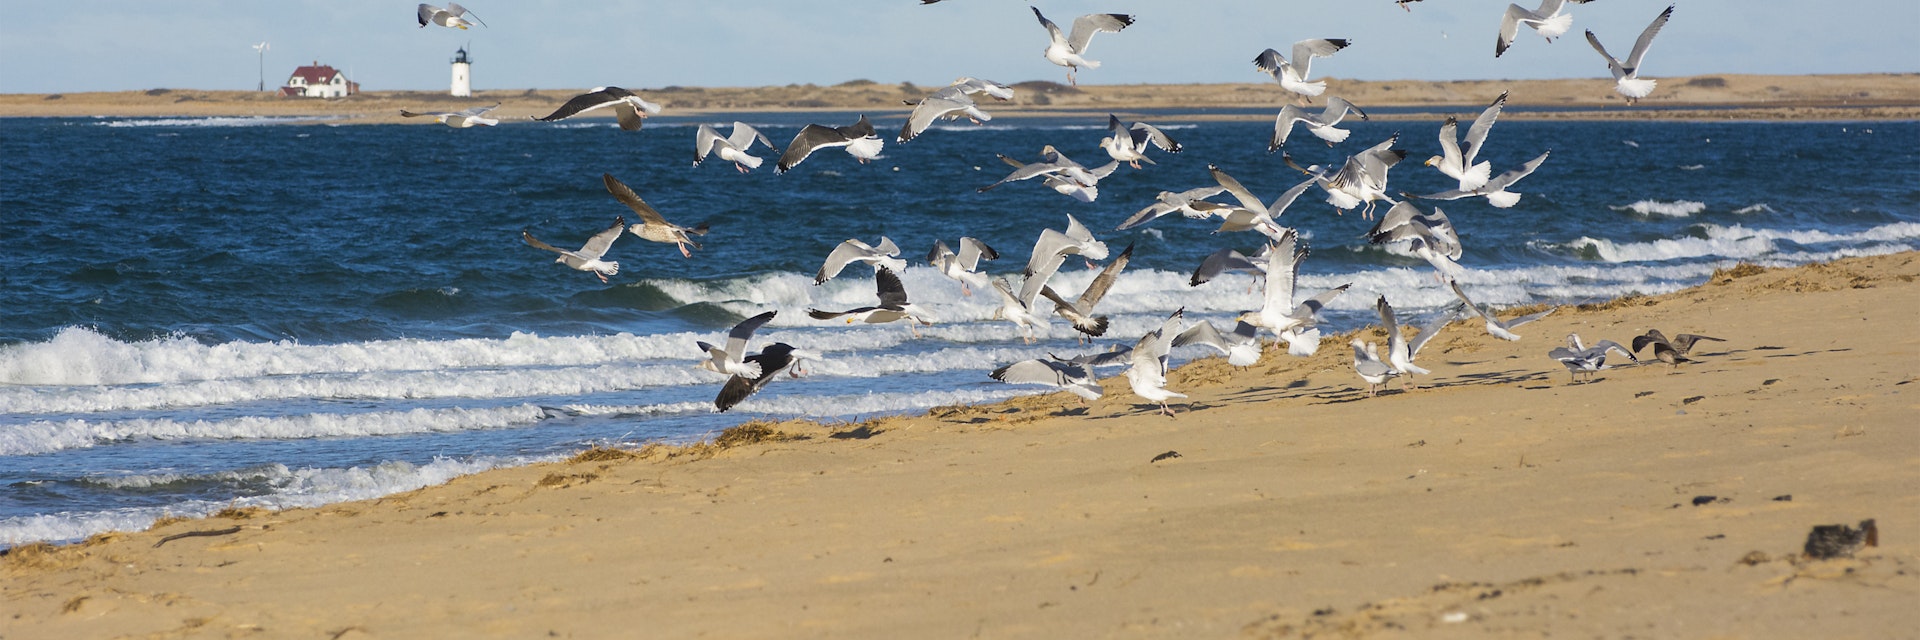 Gulls at Herring Cove Beach.